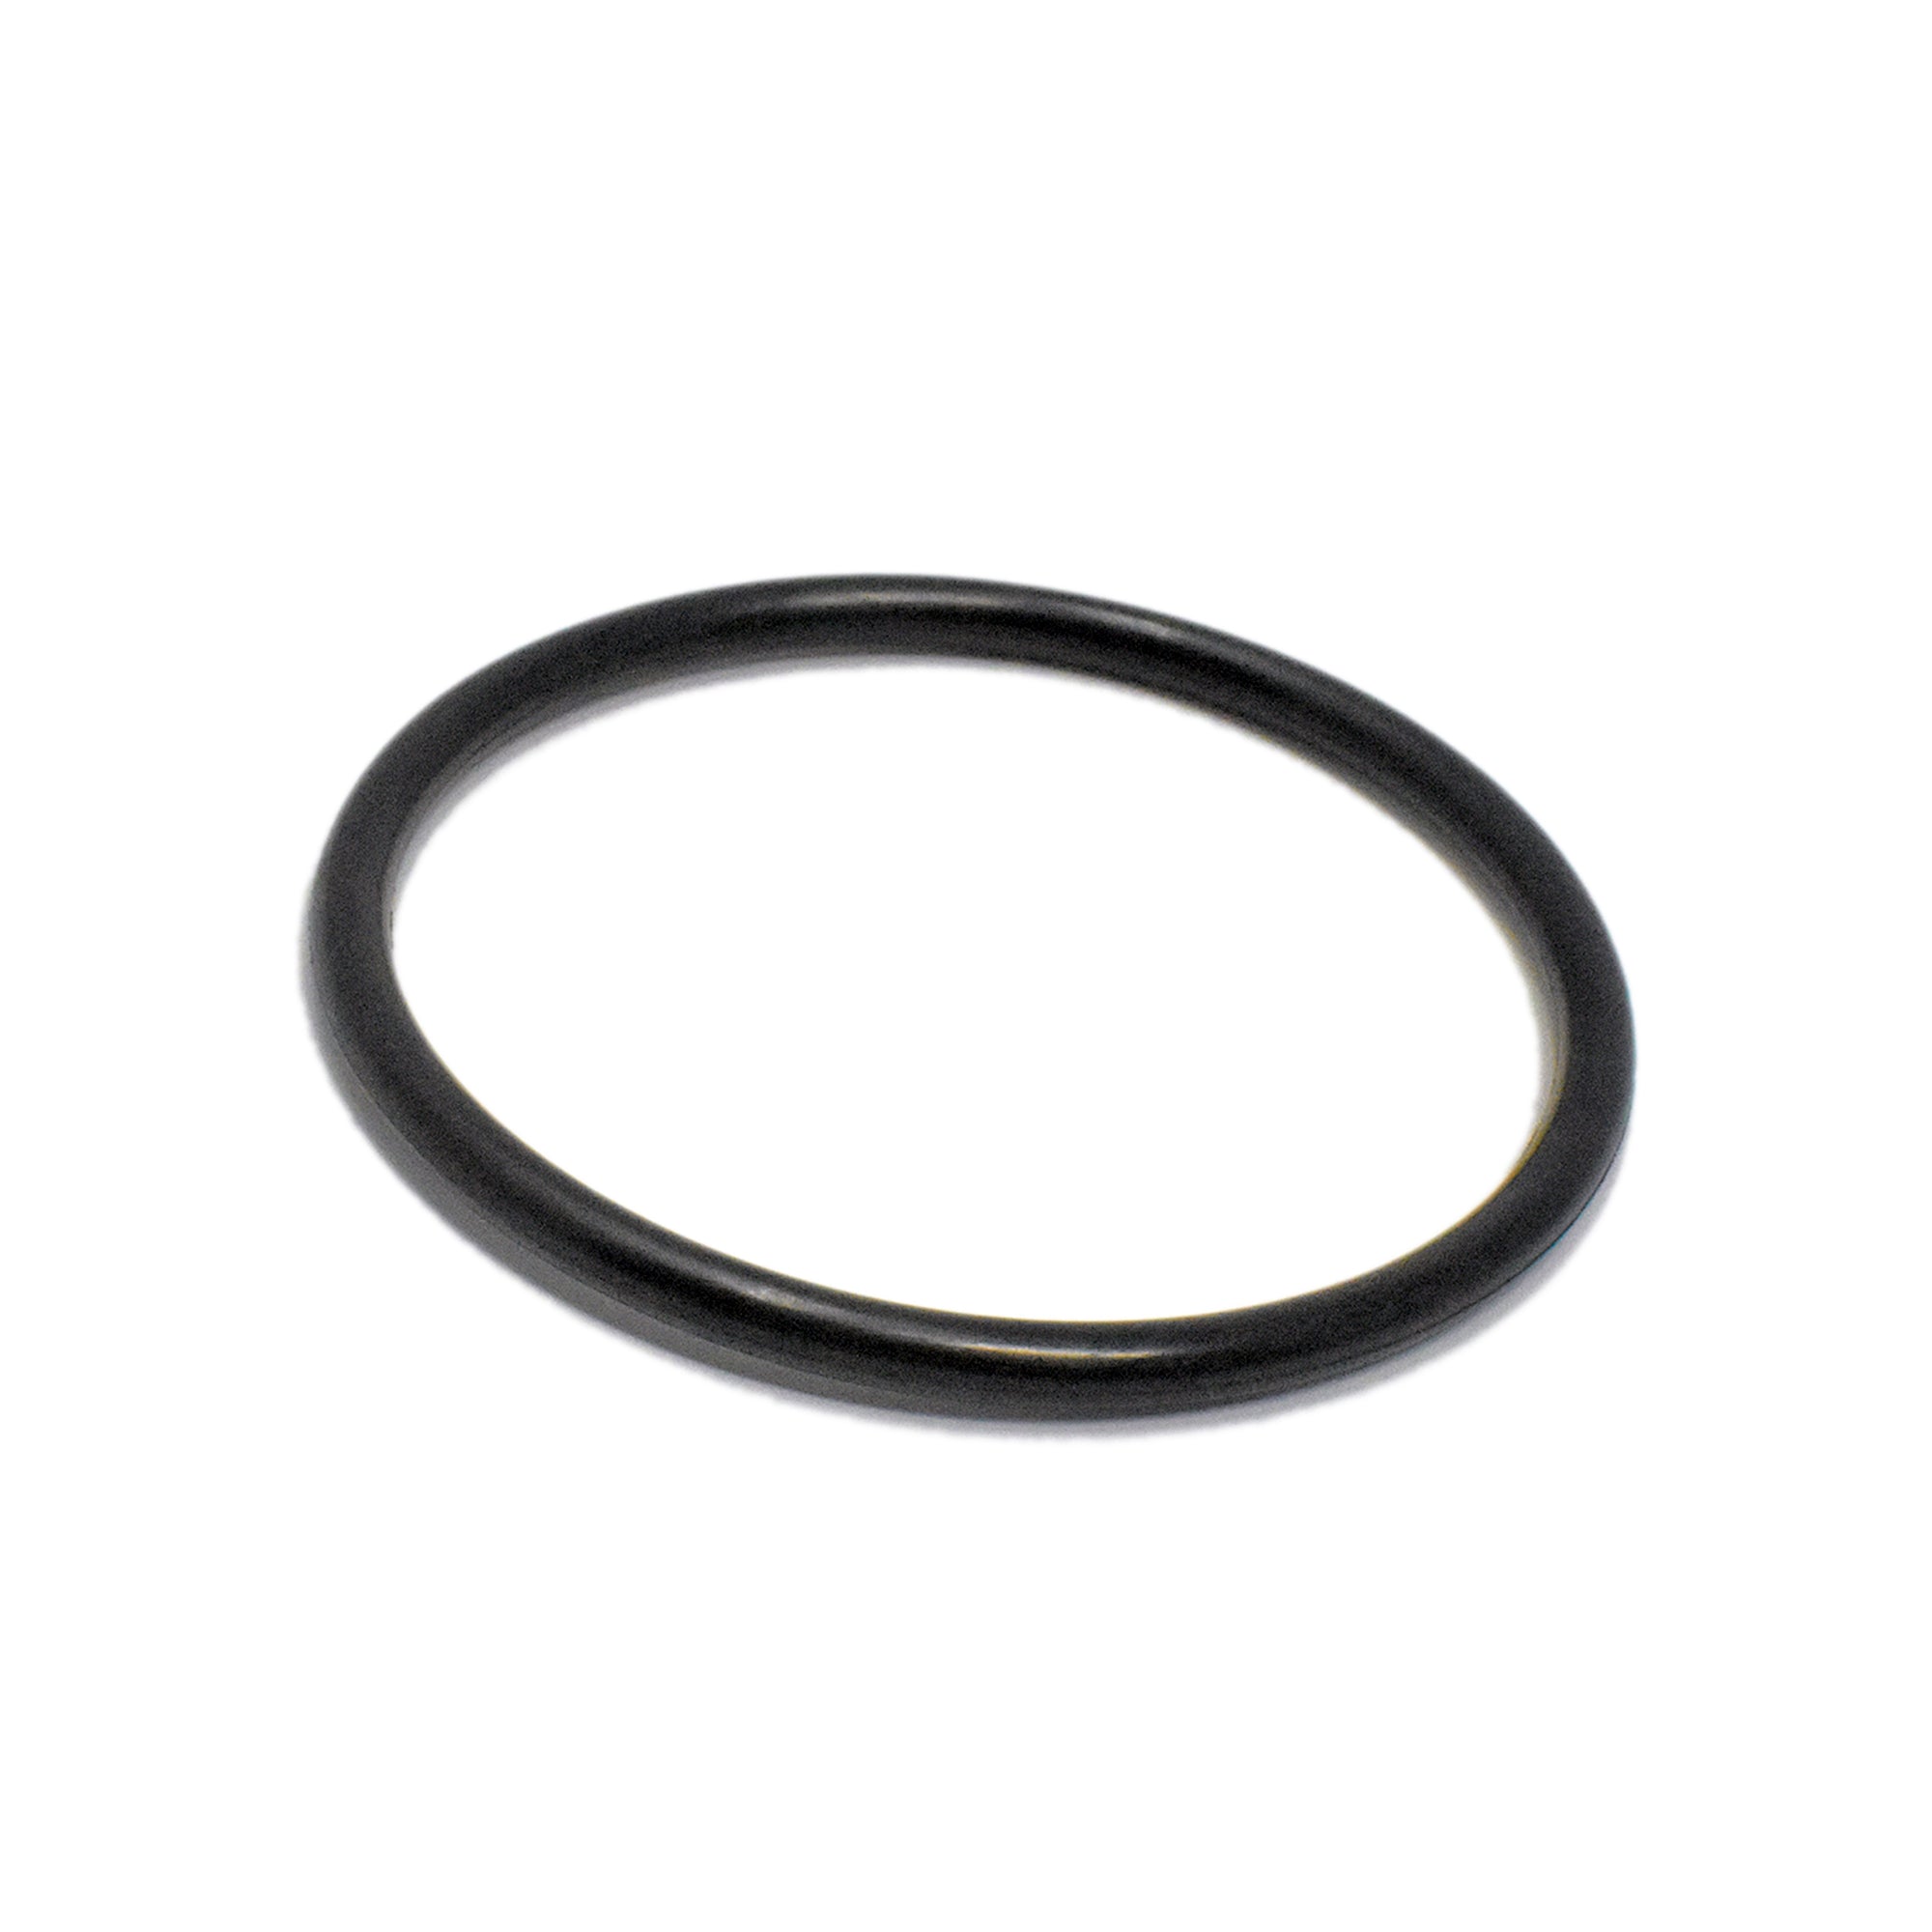 Filter Nut O-ring